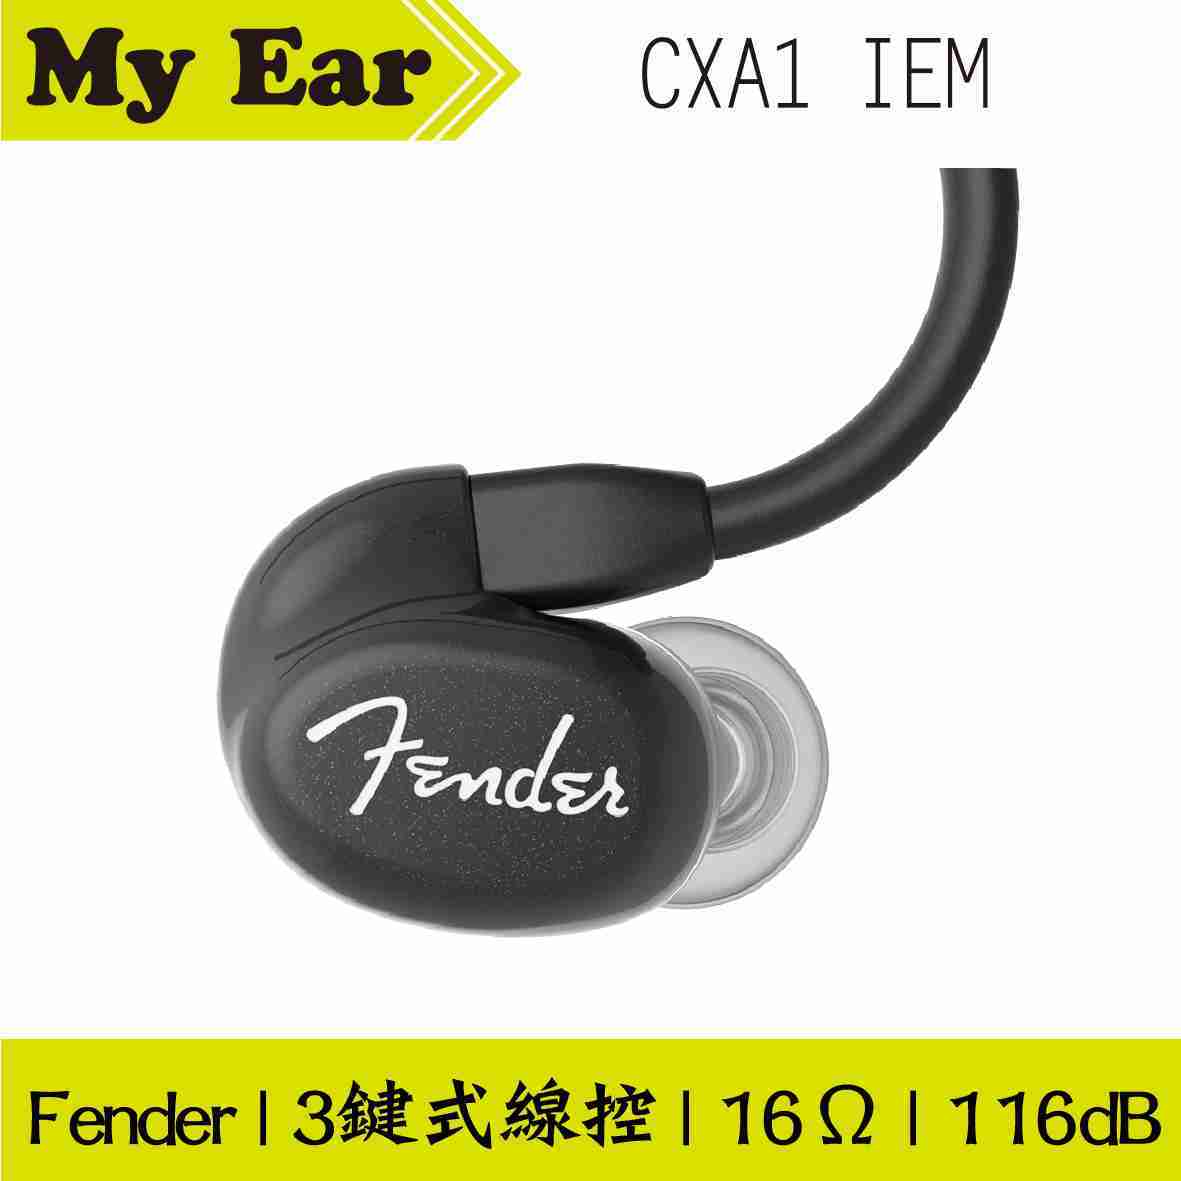 Fender CXA1 IEM 多色 可通話 線控式 耳道式耳機 | My Ear 耳機專門店